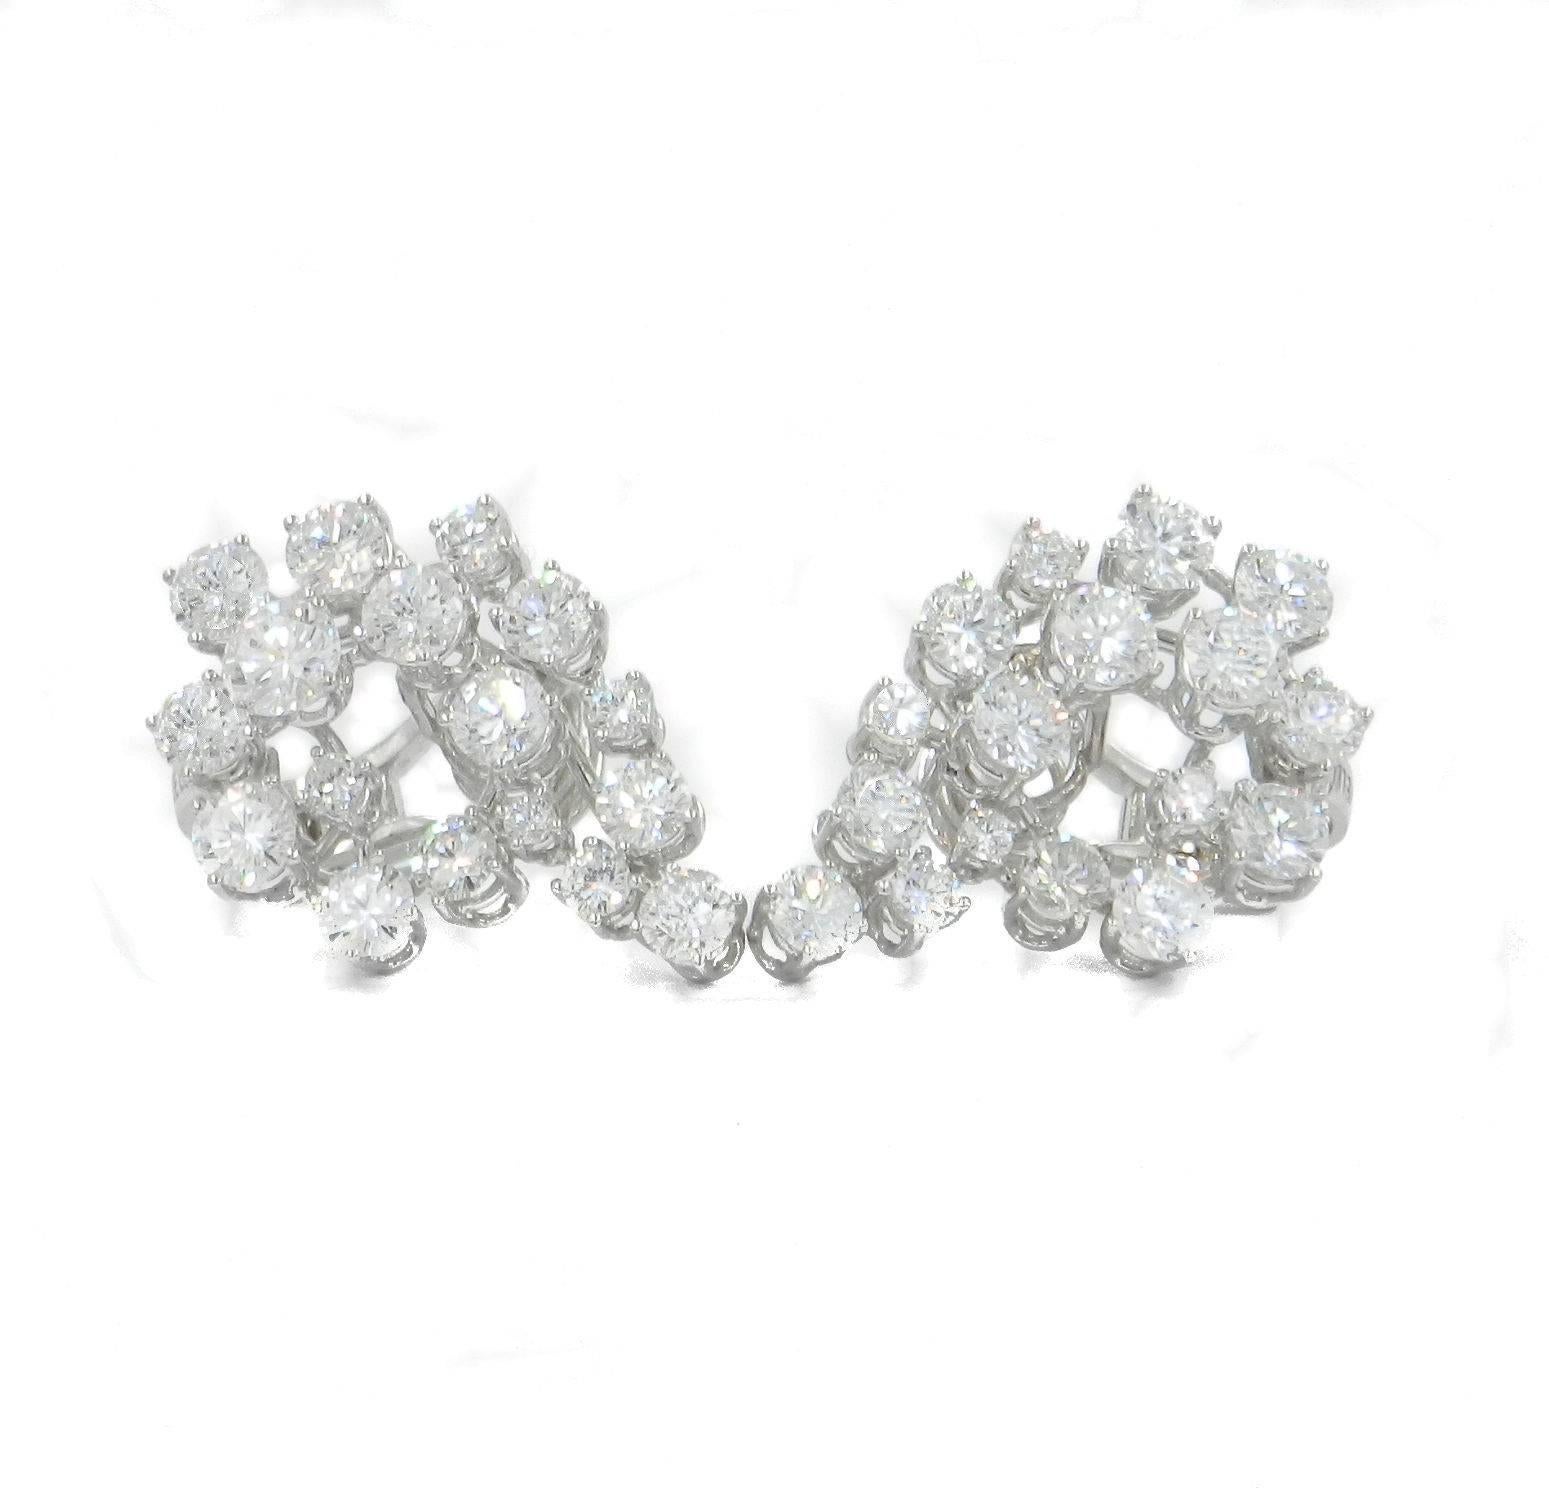 Handgefertigte Ohrringe mit schönen weißen Diamanten in verschiedenen Größen mit einem Gesamtkaratgewicht von 6,66, die alle so geformt sind, dass sie den Buchstaben G des Vornamens der Besitzerin bilden. Zeitraum 1960. Hergestellt in Italien